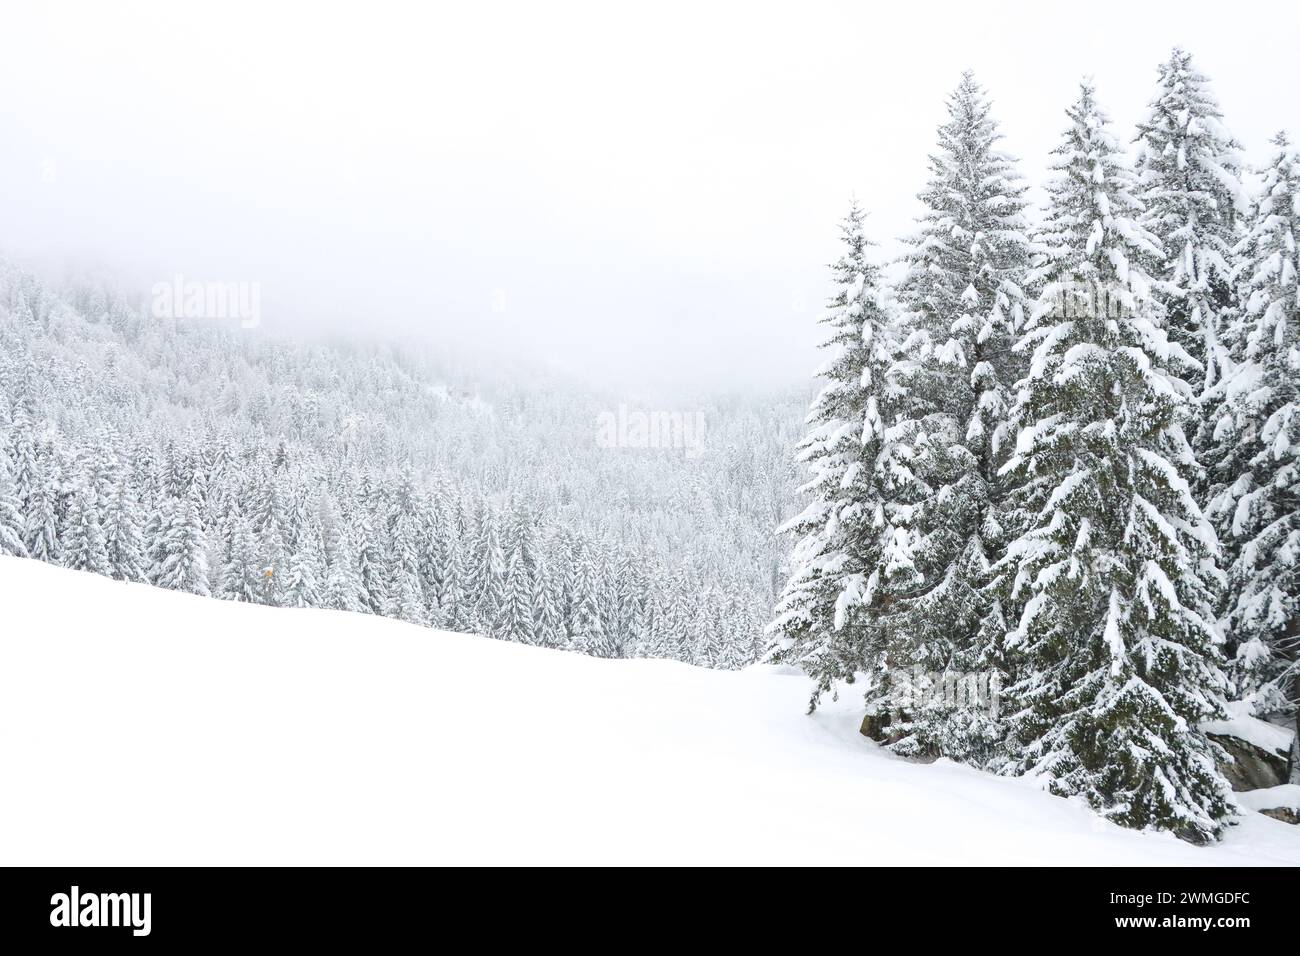 Winterlandschaft in den Bergen mit verschneitem Wald und winterlichem Himmel im Hintergrund Stock Photo